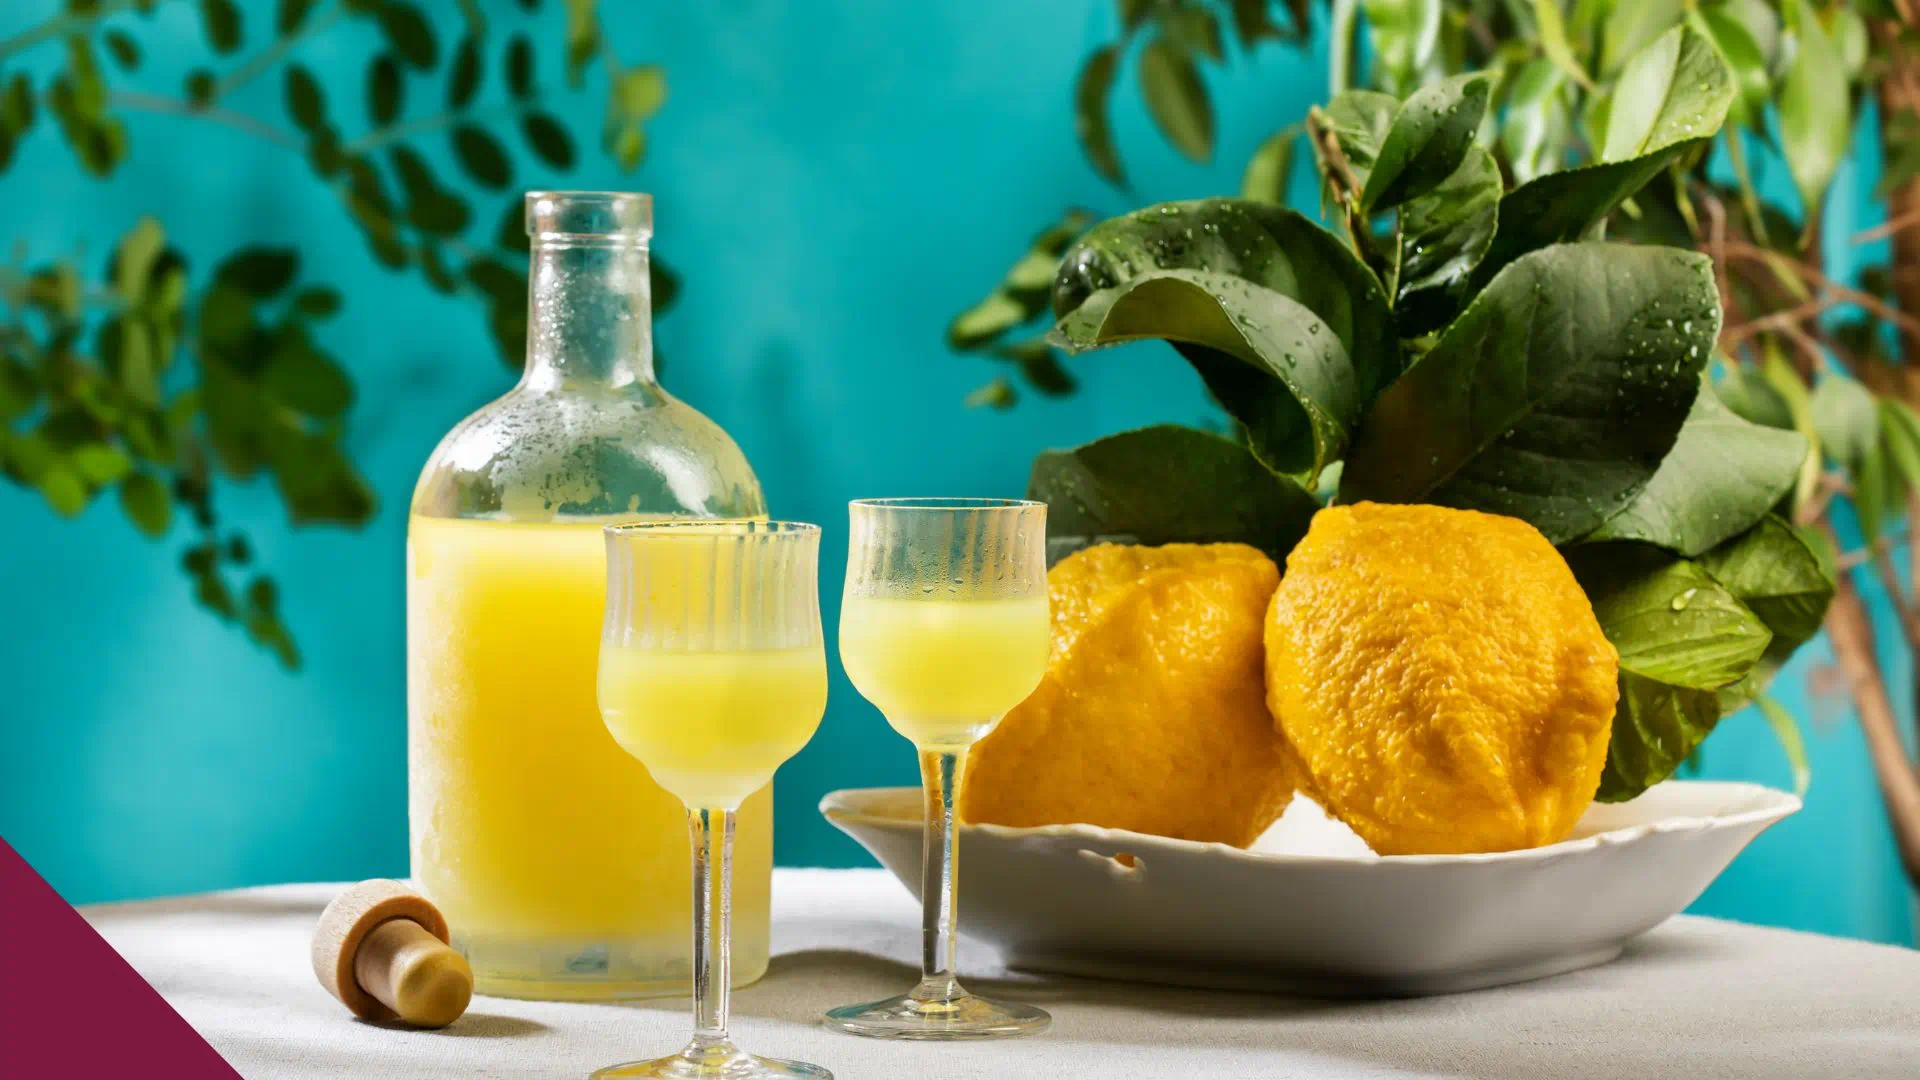 Limoncello is een populaire Italiaanse likeur met een frisse citroensmaak. Het kan gemakkelijk thuis worden gemaakt en gebruikt worden in verschillende gerechten, zoals tiramisu en amandel-citroentaart.